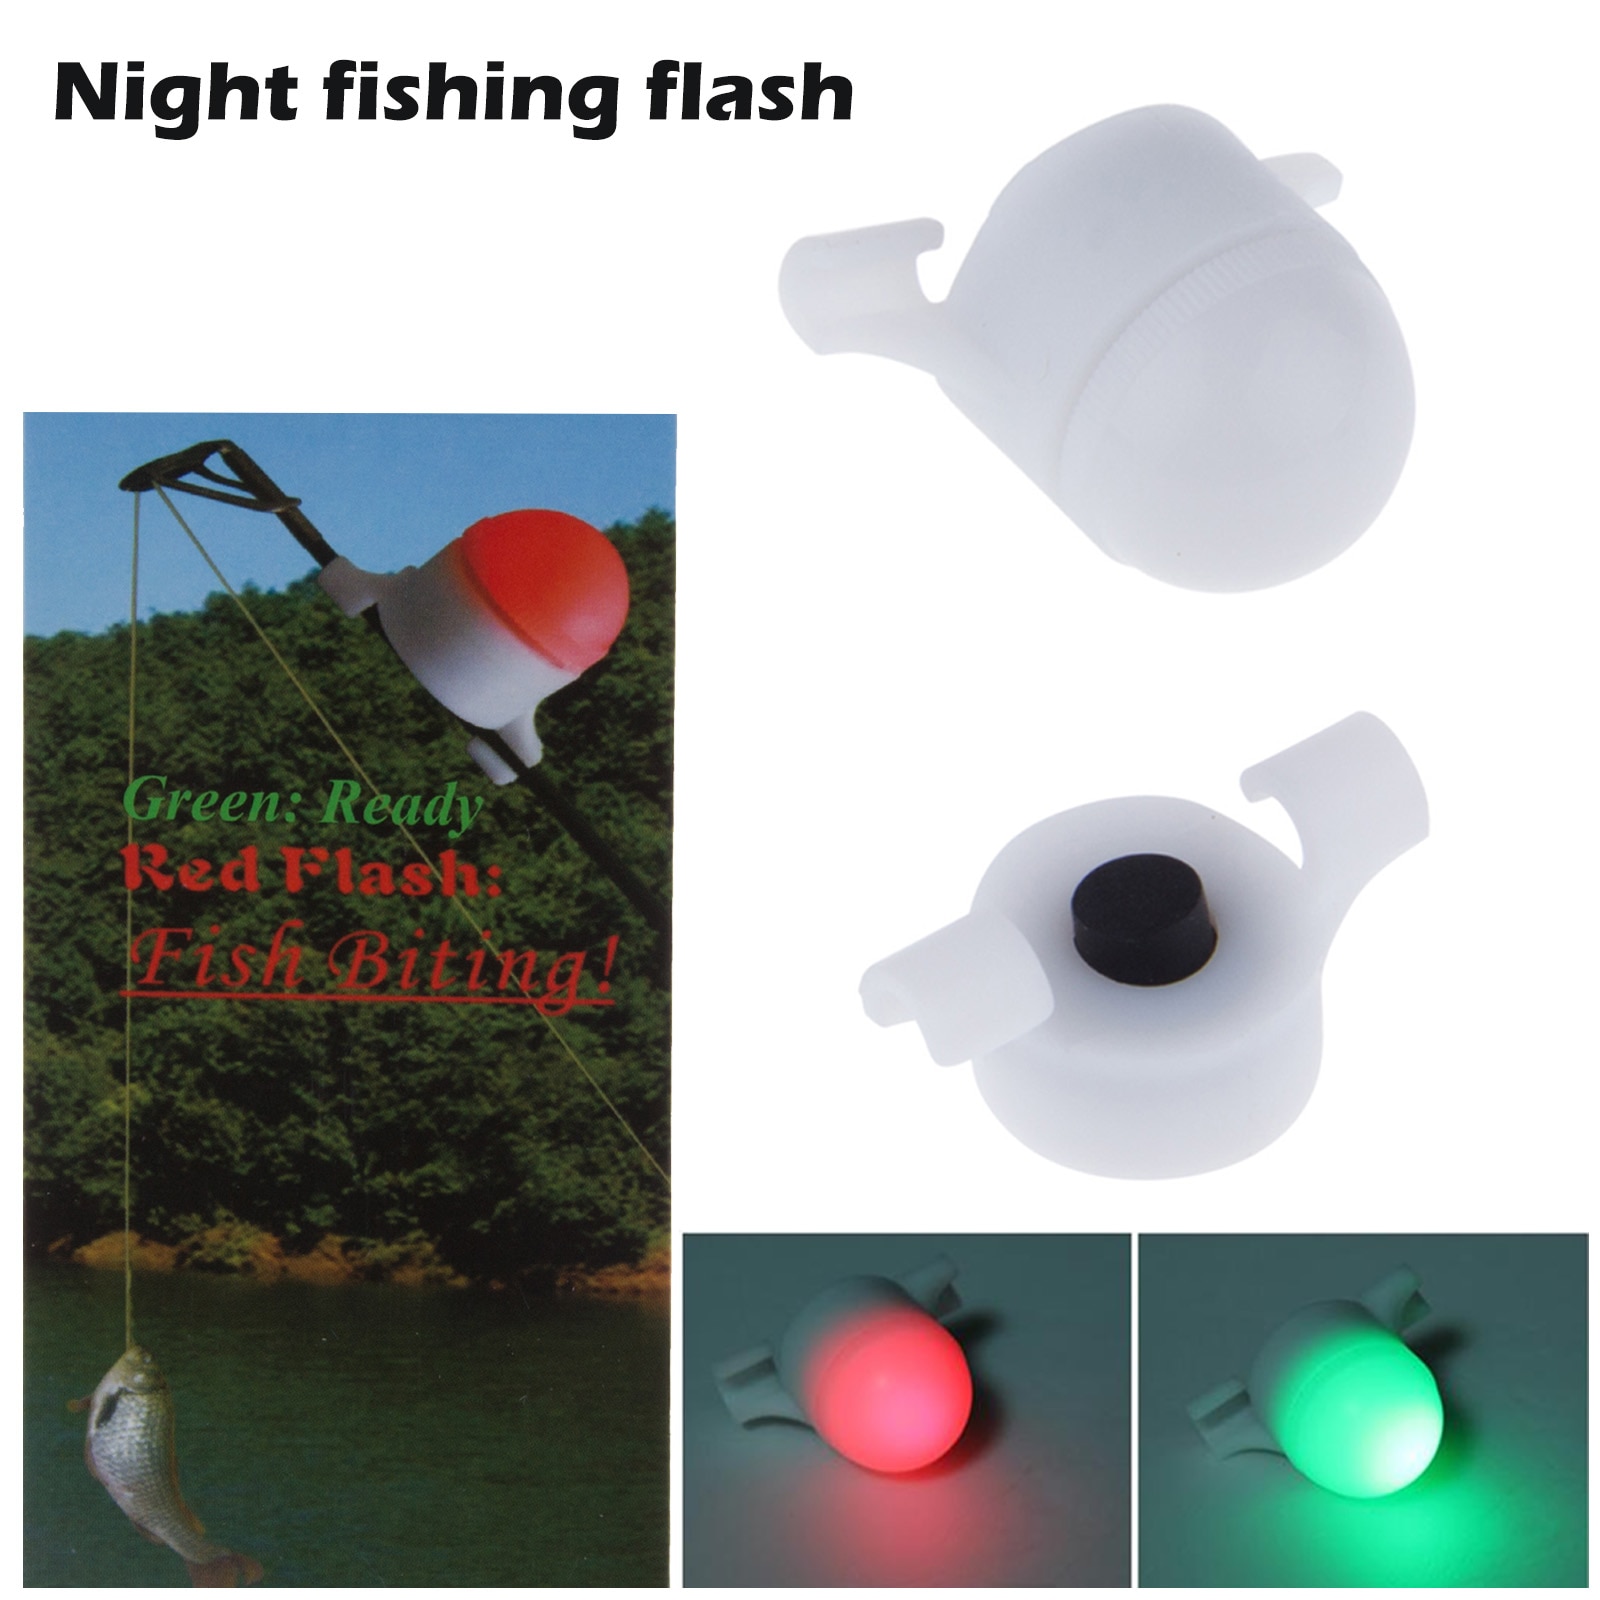 Fiskelys nyttige partier fiskeri / fest fishfinder lampe tiltrækker rejer blæksprutte natledt fiskeri tilbehør til flådefiskeri: Default Title